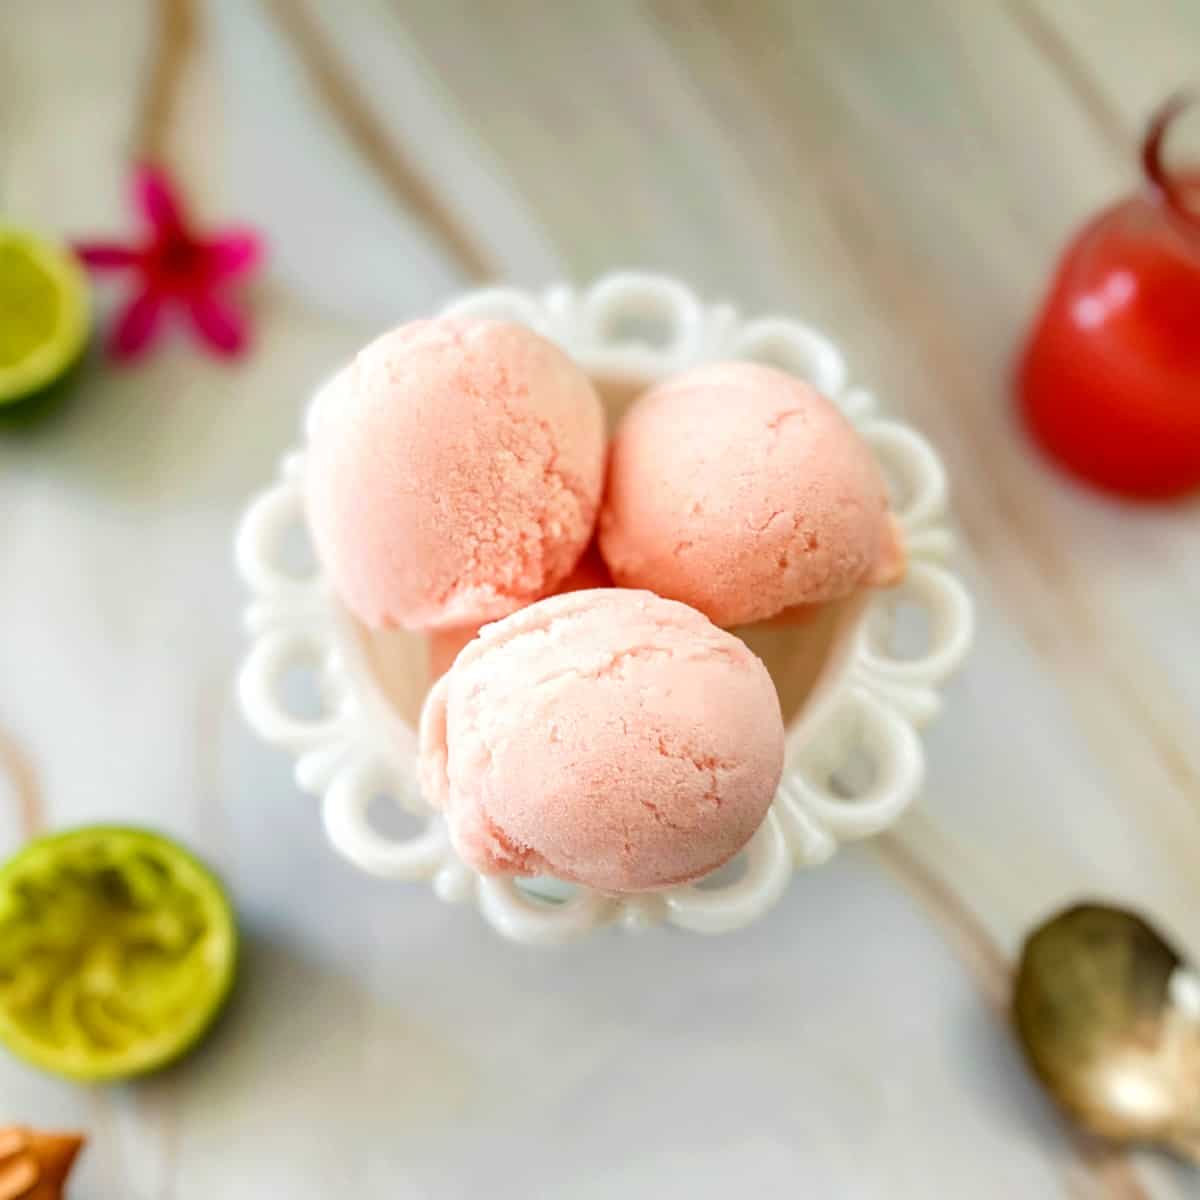 guava gelato in a bowl